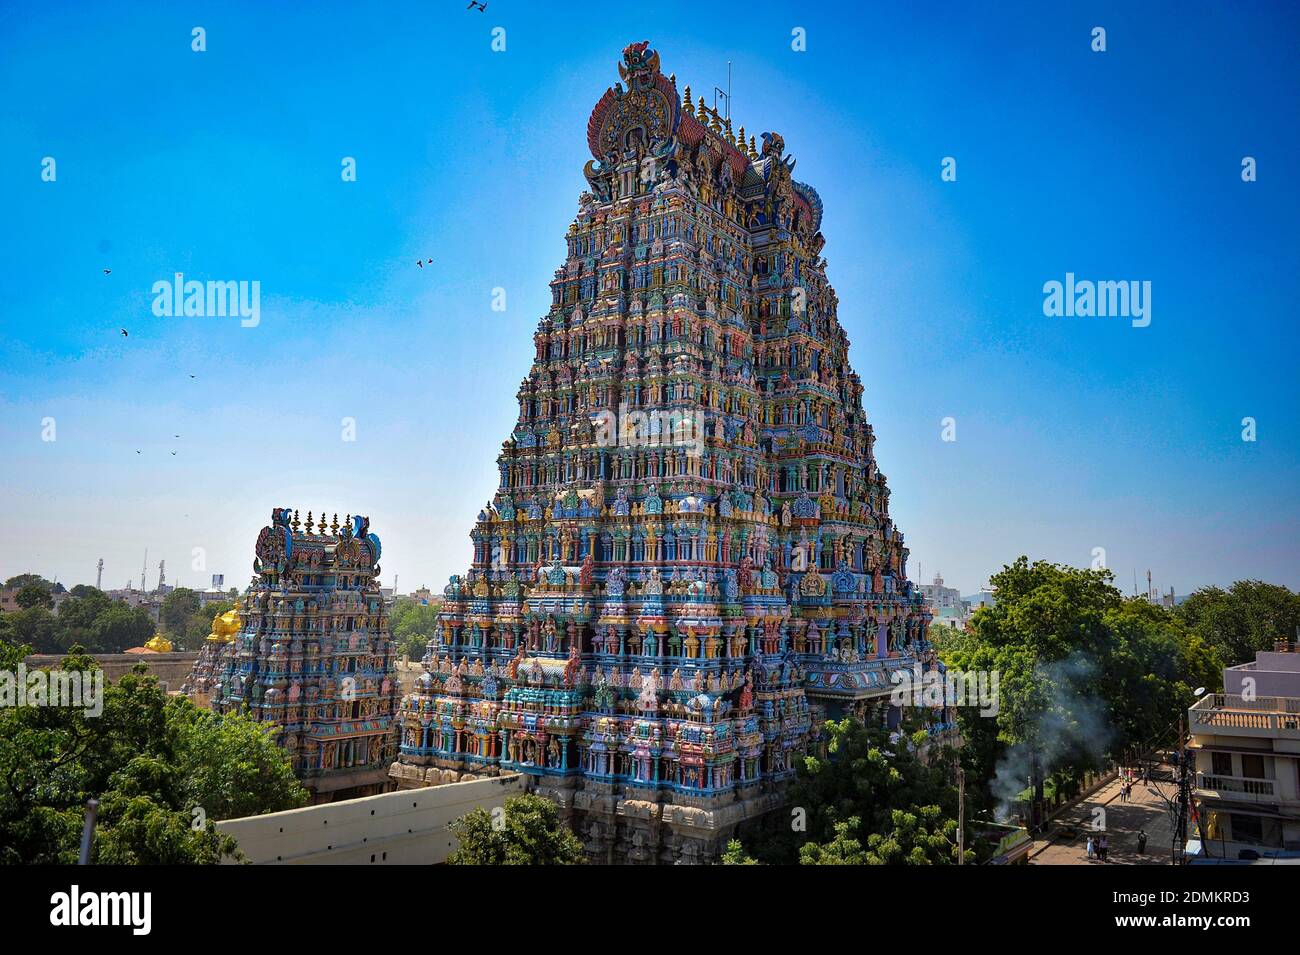 Meenakshi Amman Tempel in Madurai, um das 17. Jahrhundert n. Chr. gebaut, ist der Tempel Lord Shiva und Göttin Parvati in Tamil Nadu auf Februar gewidmet Stockfoto